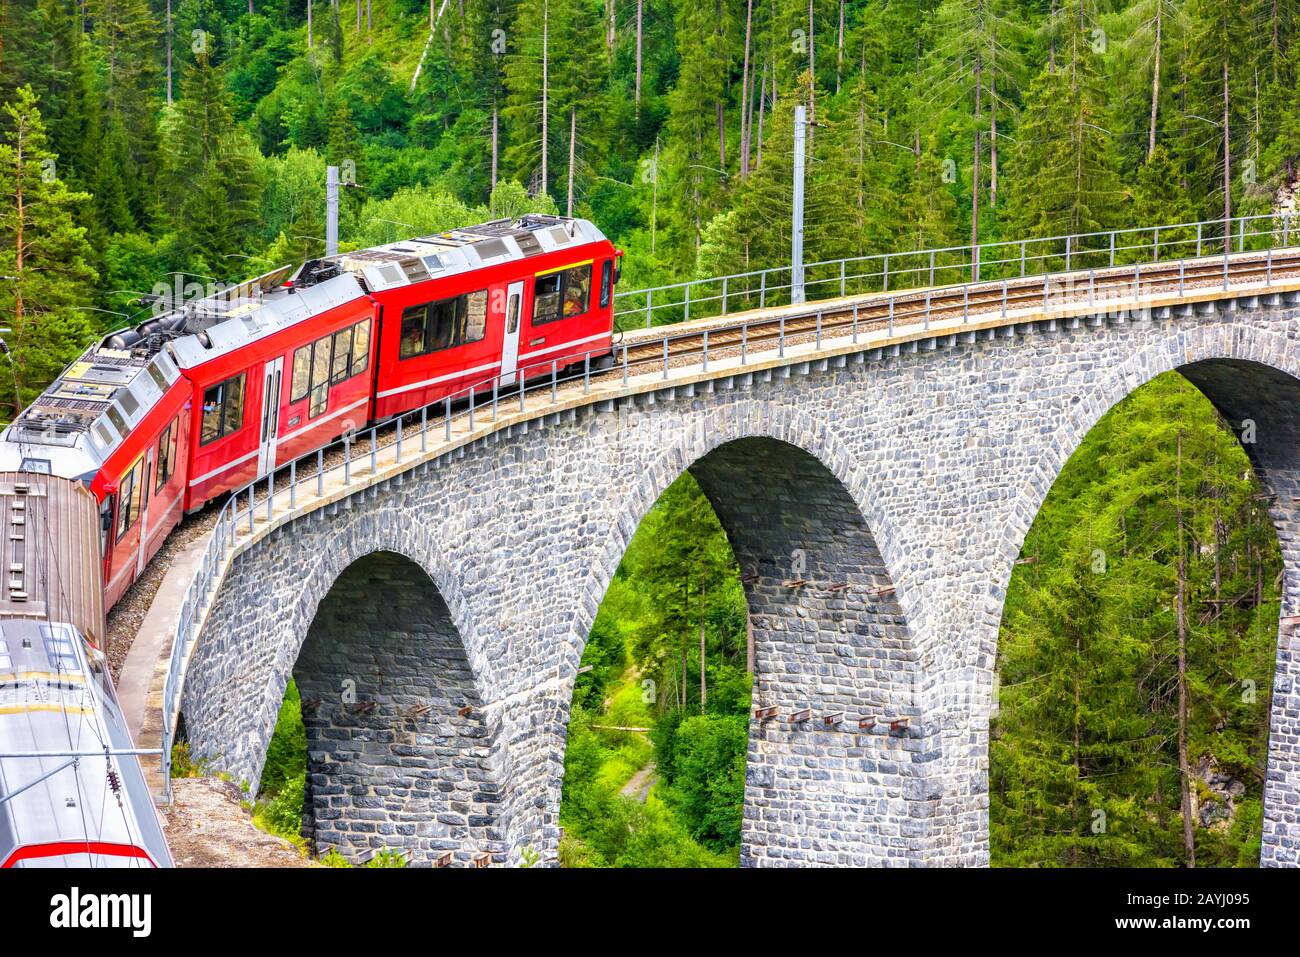 Landwasser Viaduct primo piano, Svizzera. E' famoso punto di riferimento della Svizzera. Treno espresso rosso su ponte alto in montagna. Vista panoramica della sorprendente railwa Foto Stock